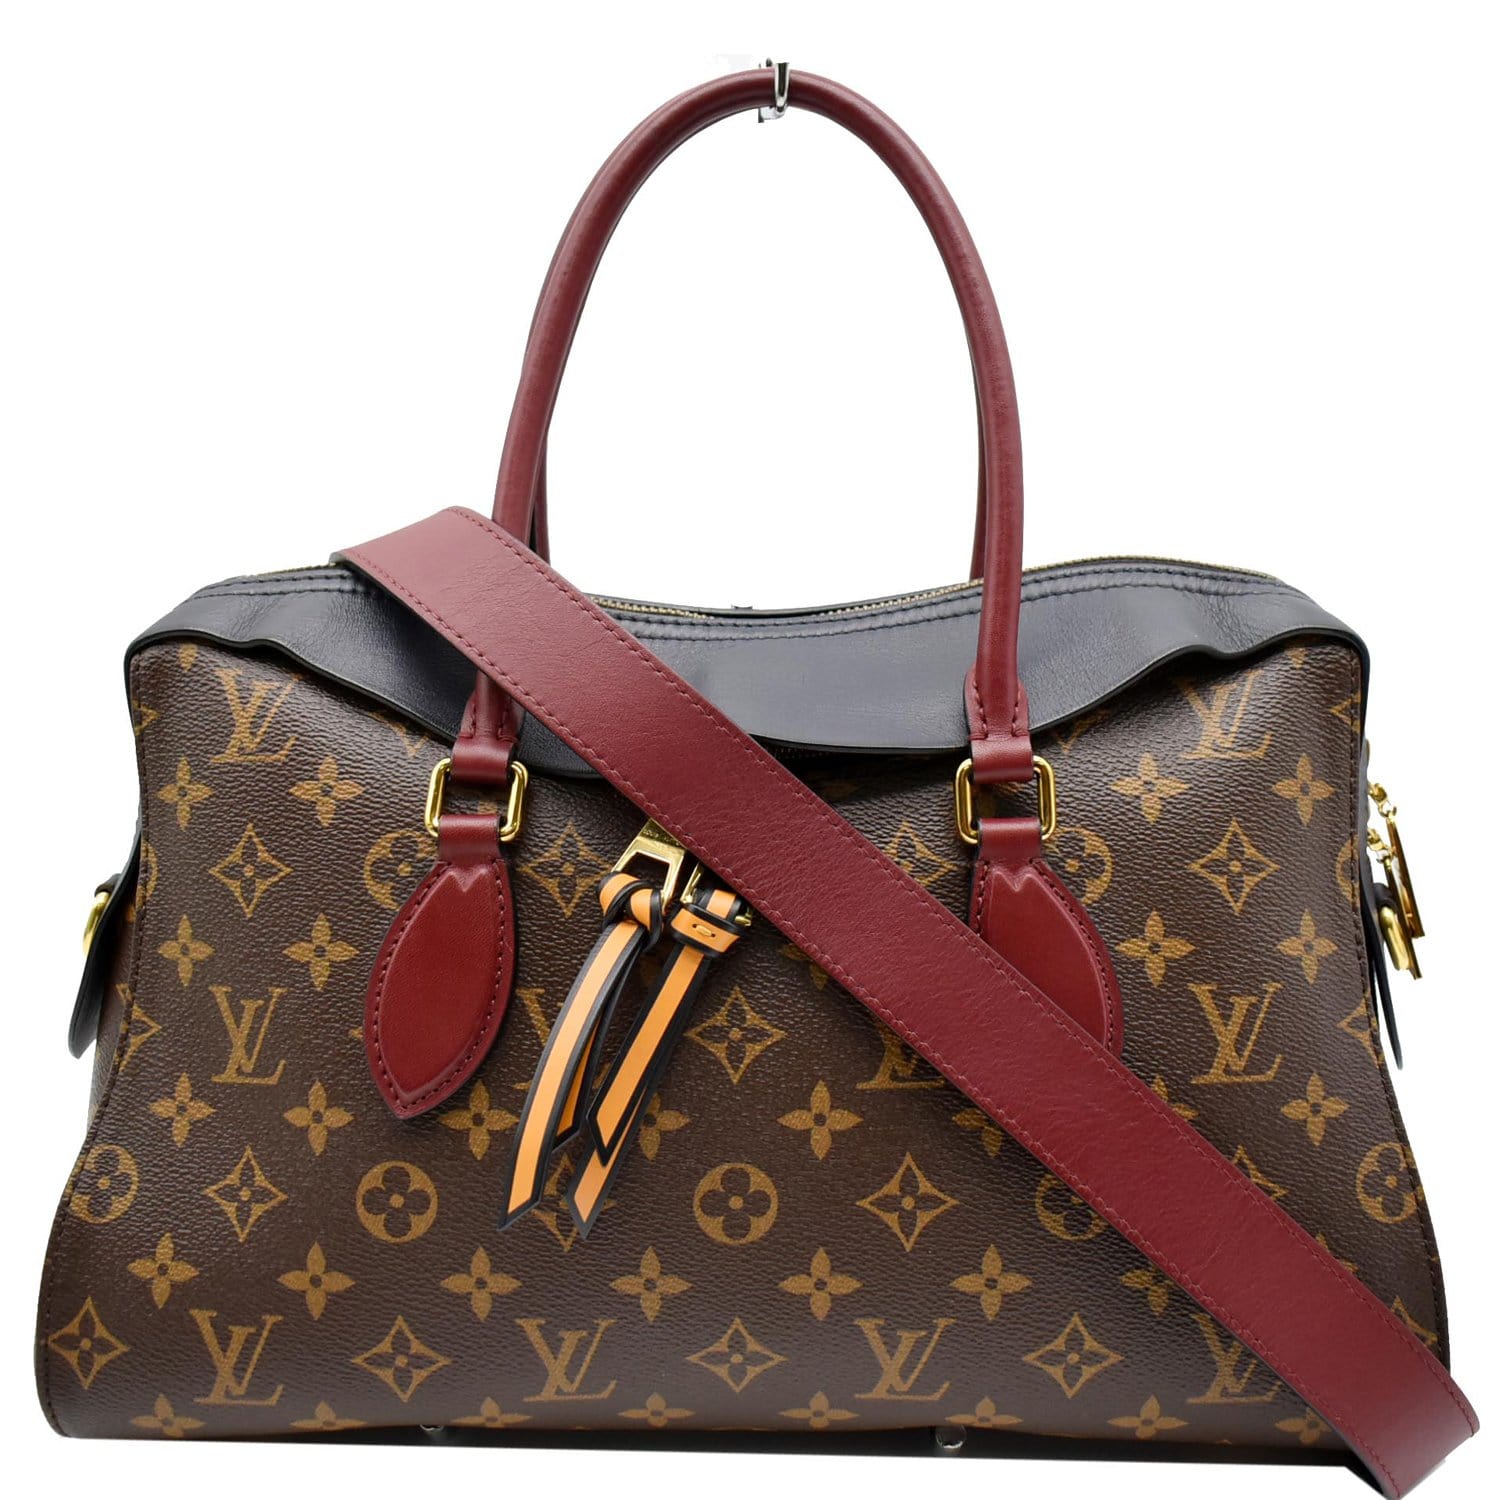 Tuileries cloth bag Louis Vuitton Brown in Cloth - 27485349